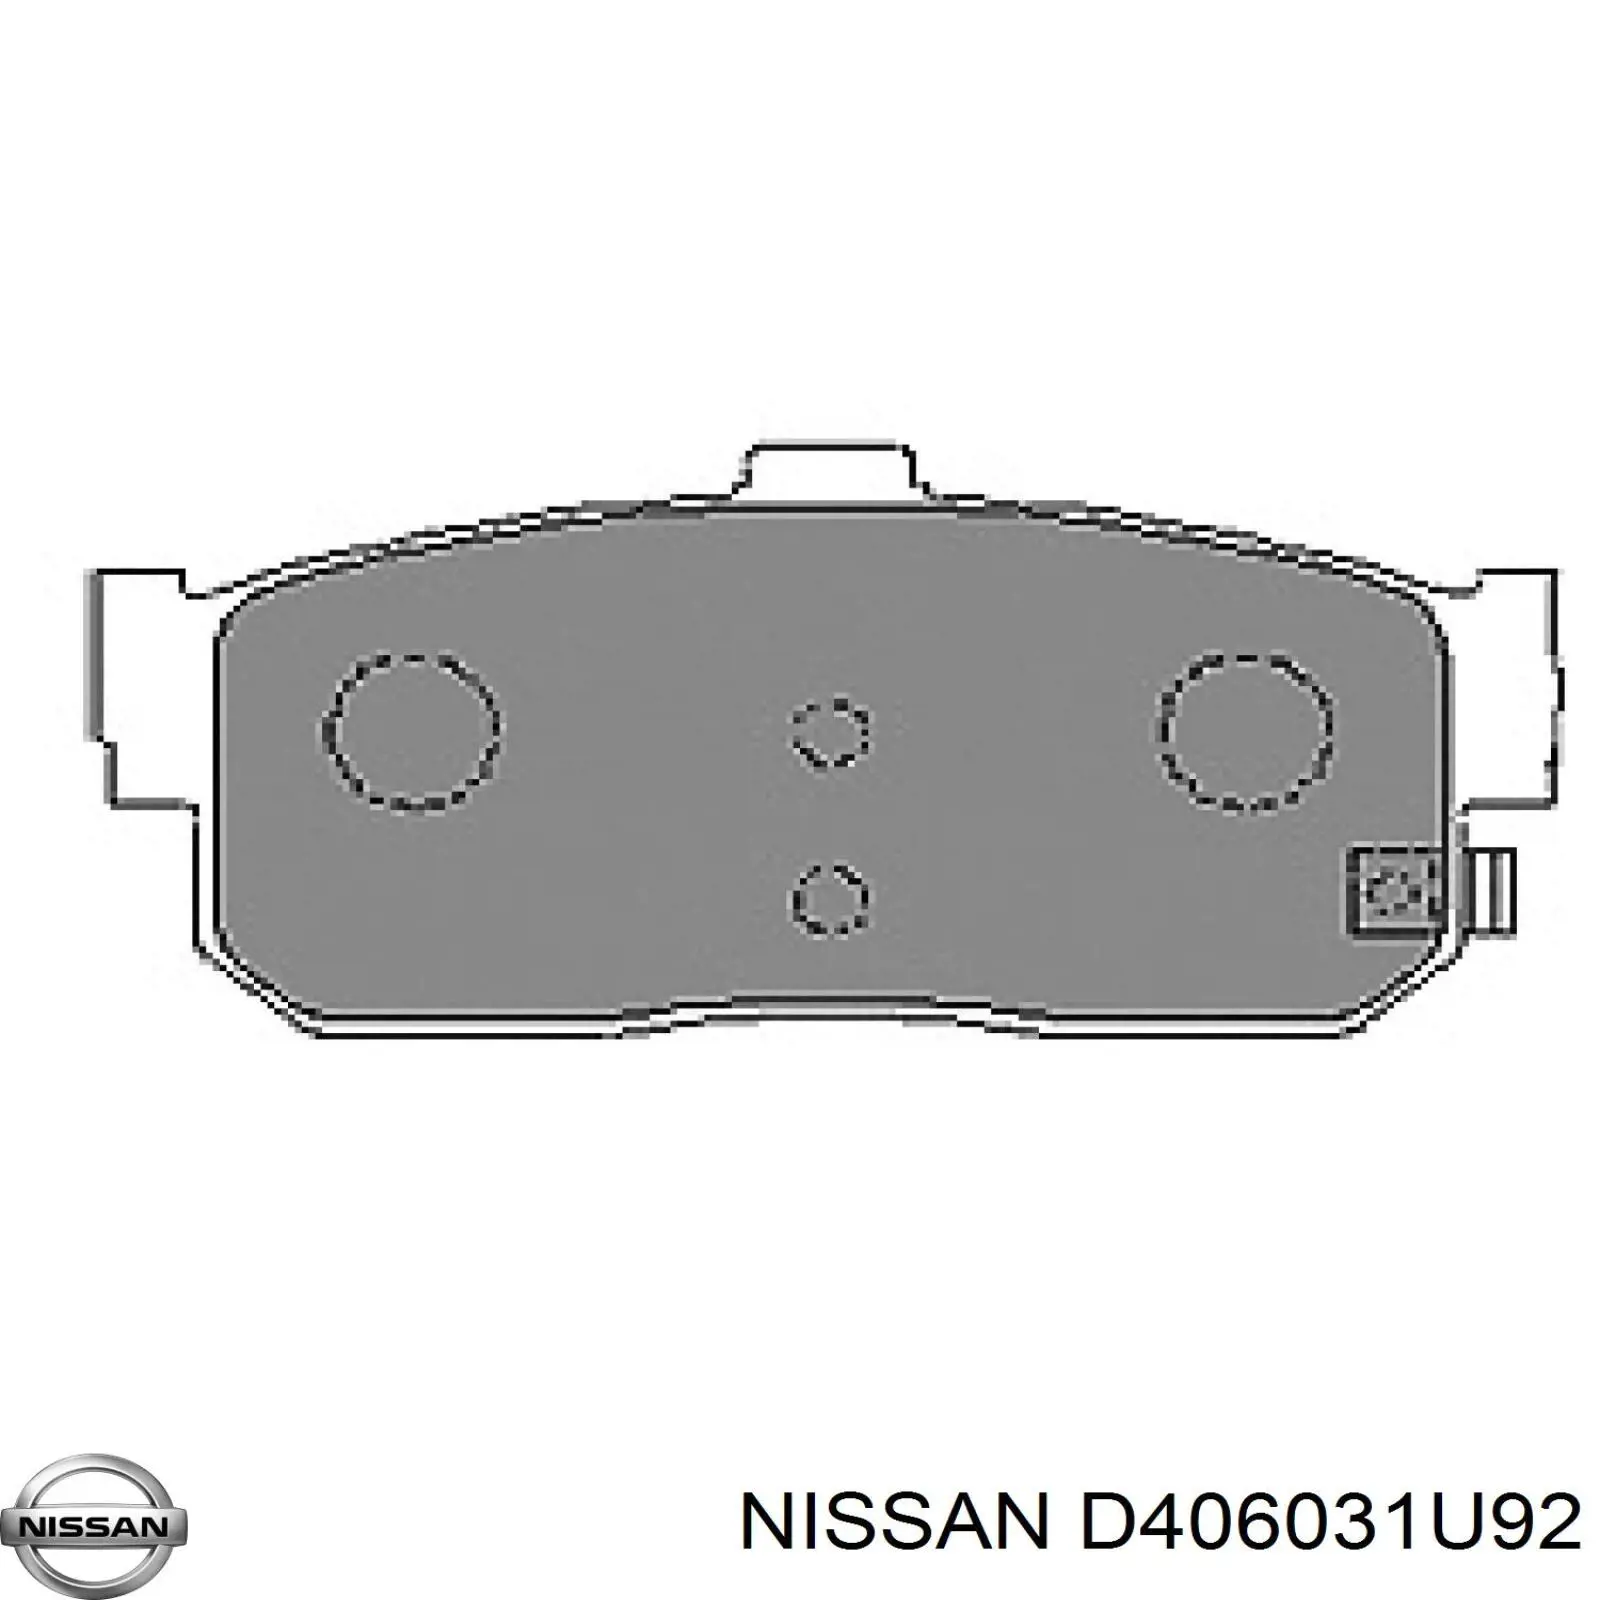 D406031U92 Nissan pastillas de freno traseras